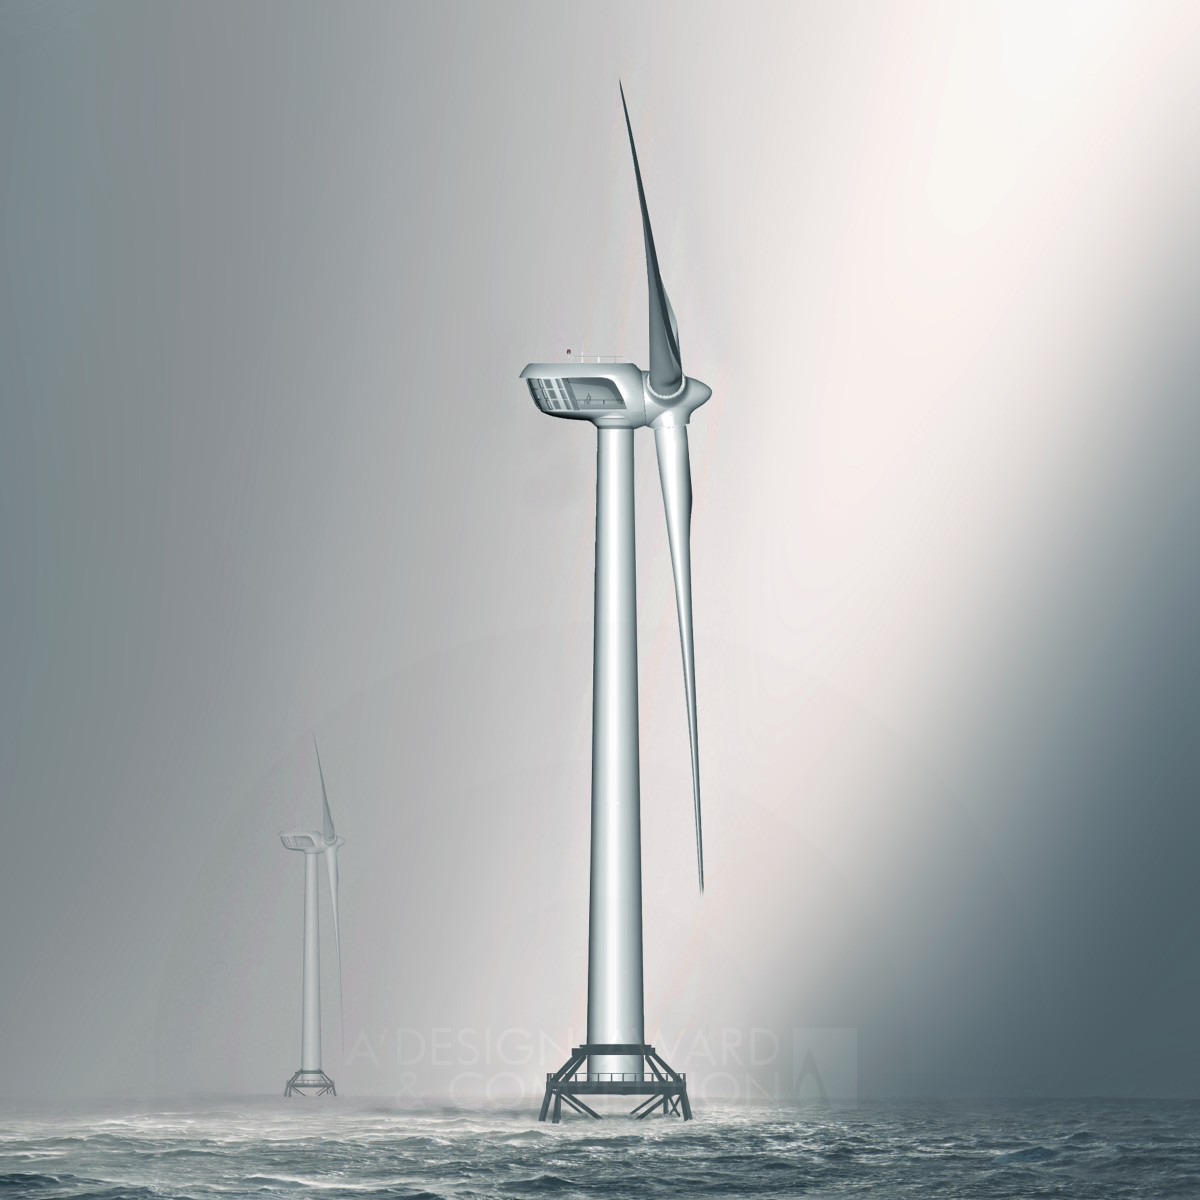 Britannia <b>10MW Offshore Wind Turbine